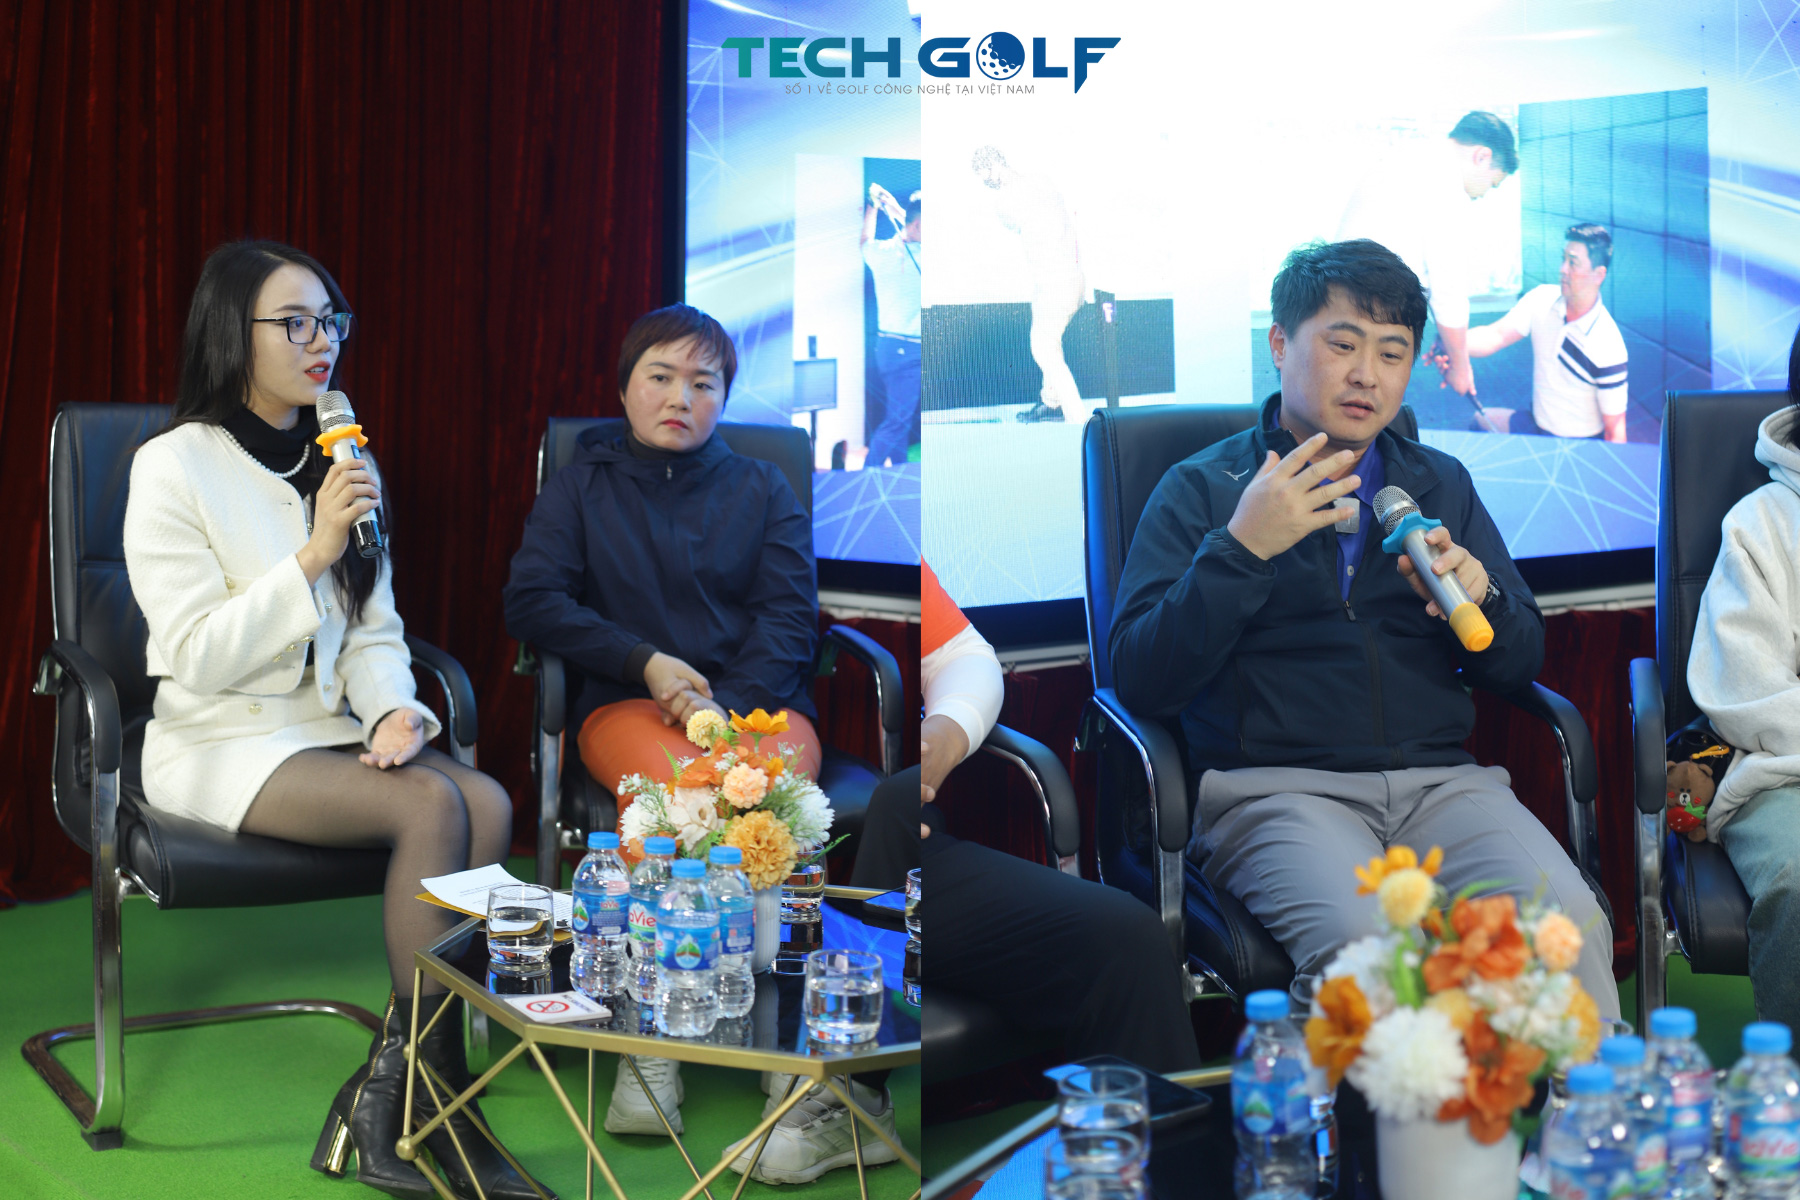 HLV Lee Kyu Han chia sẻ về những lợi ích khi đào tạo golf trong phòng 3D